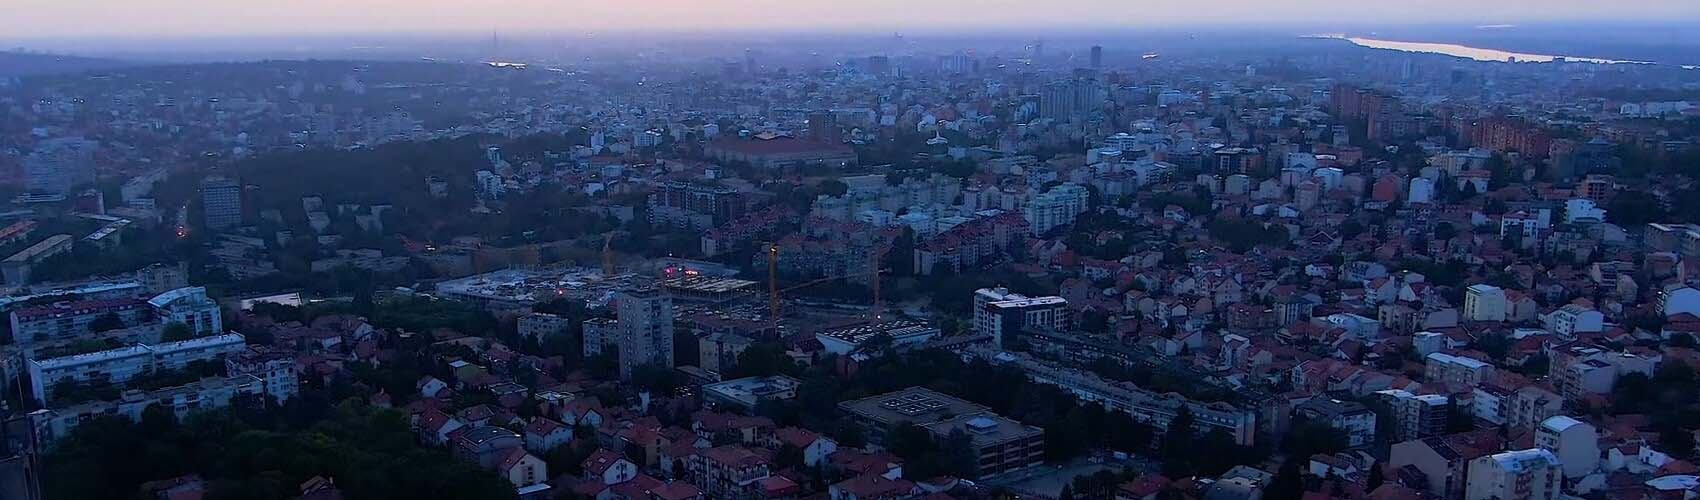 Kasko osiguranje Beograd | Konjarnik